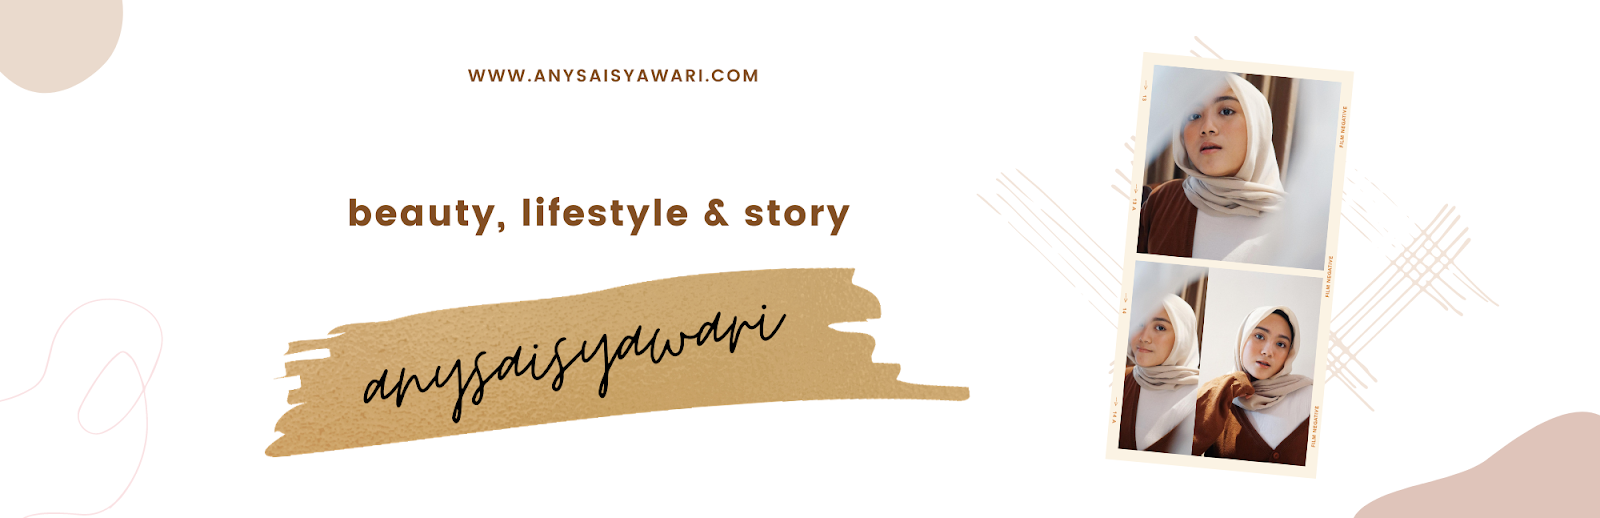 ANYSA ISYAWARI - Beauty, Lifestyle & Story